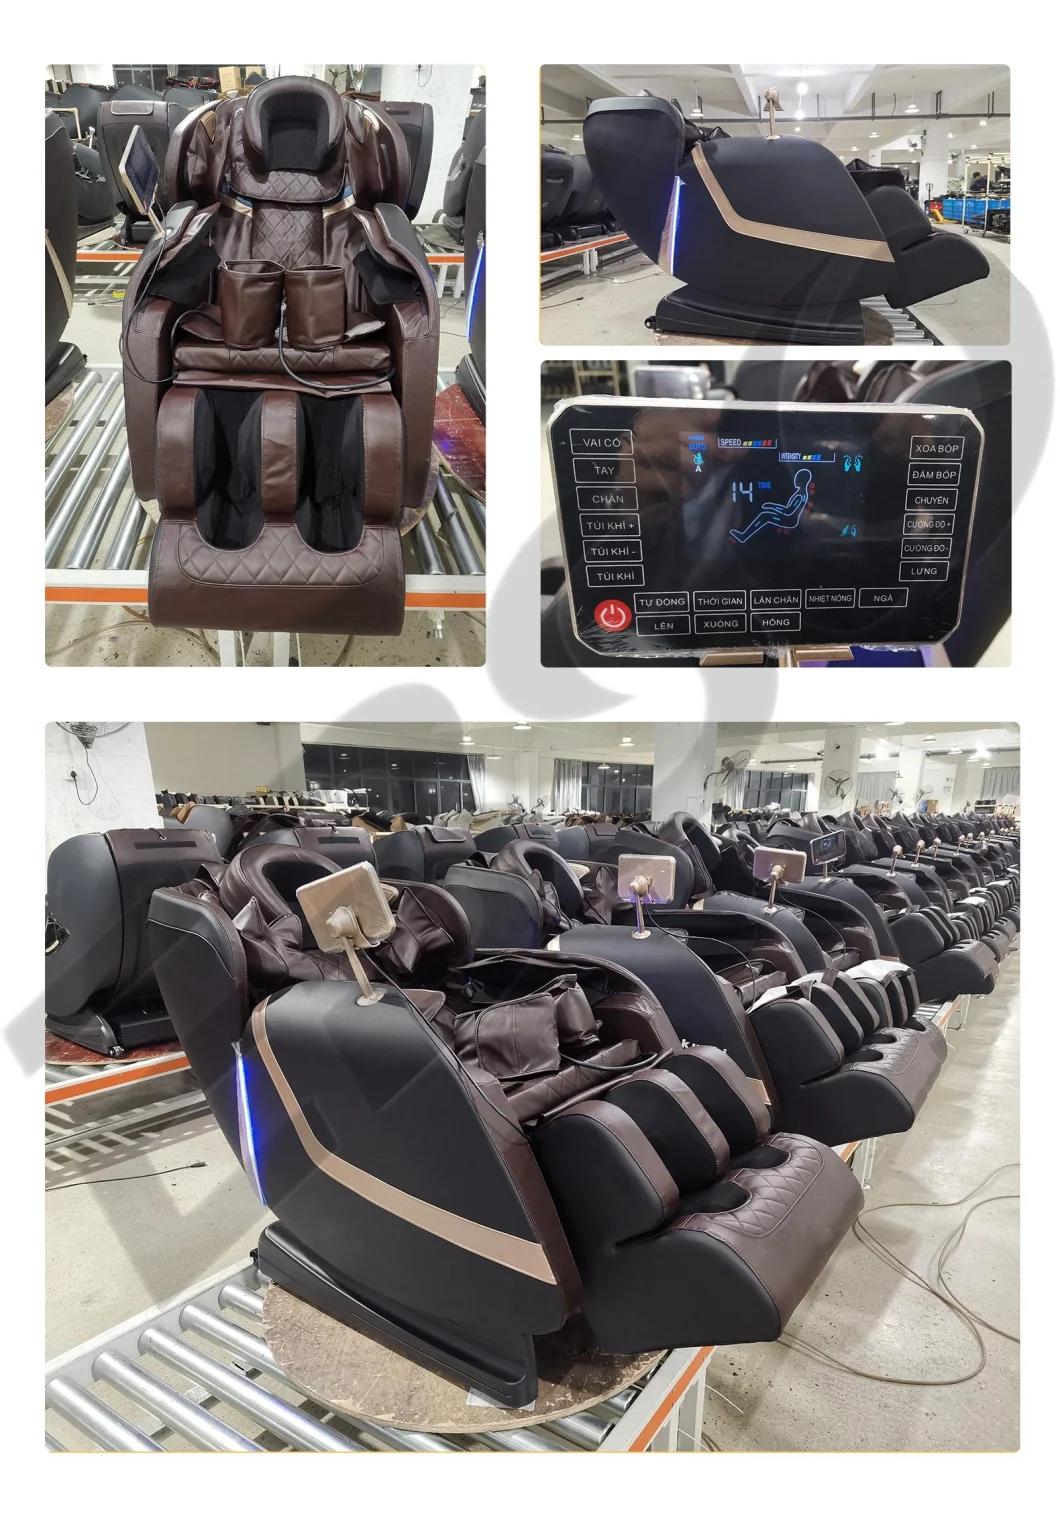 Massage Chair 8d Zero Gravity Luxury Massage Equipment Manufacturers with Head Massage